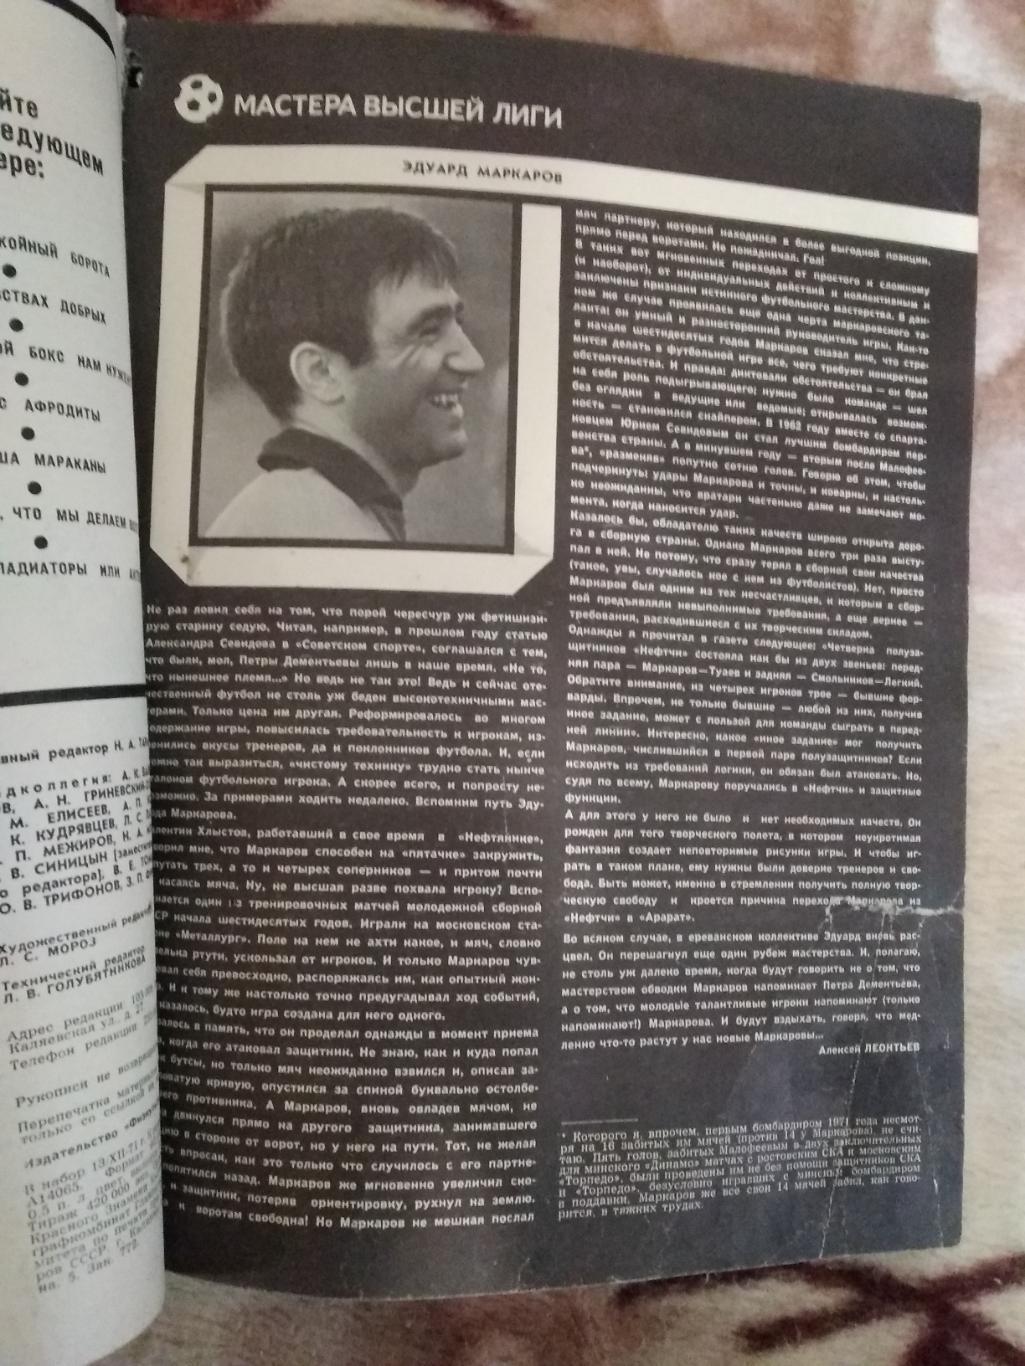 Журнал.Физкультура и спорт № 2 1972 г. (ФиС). 6